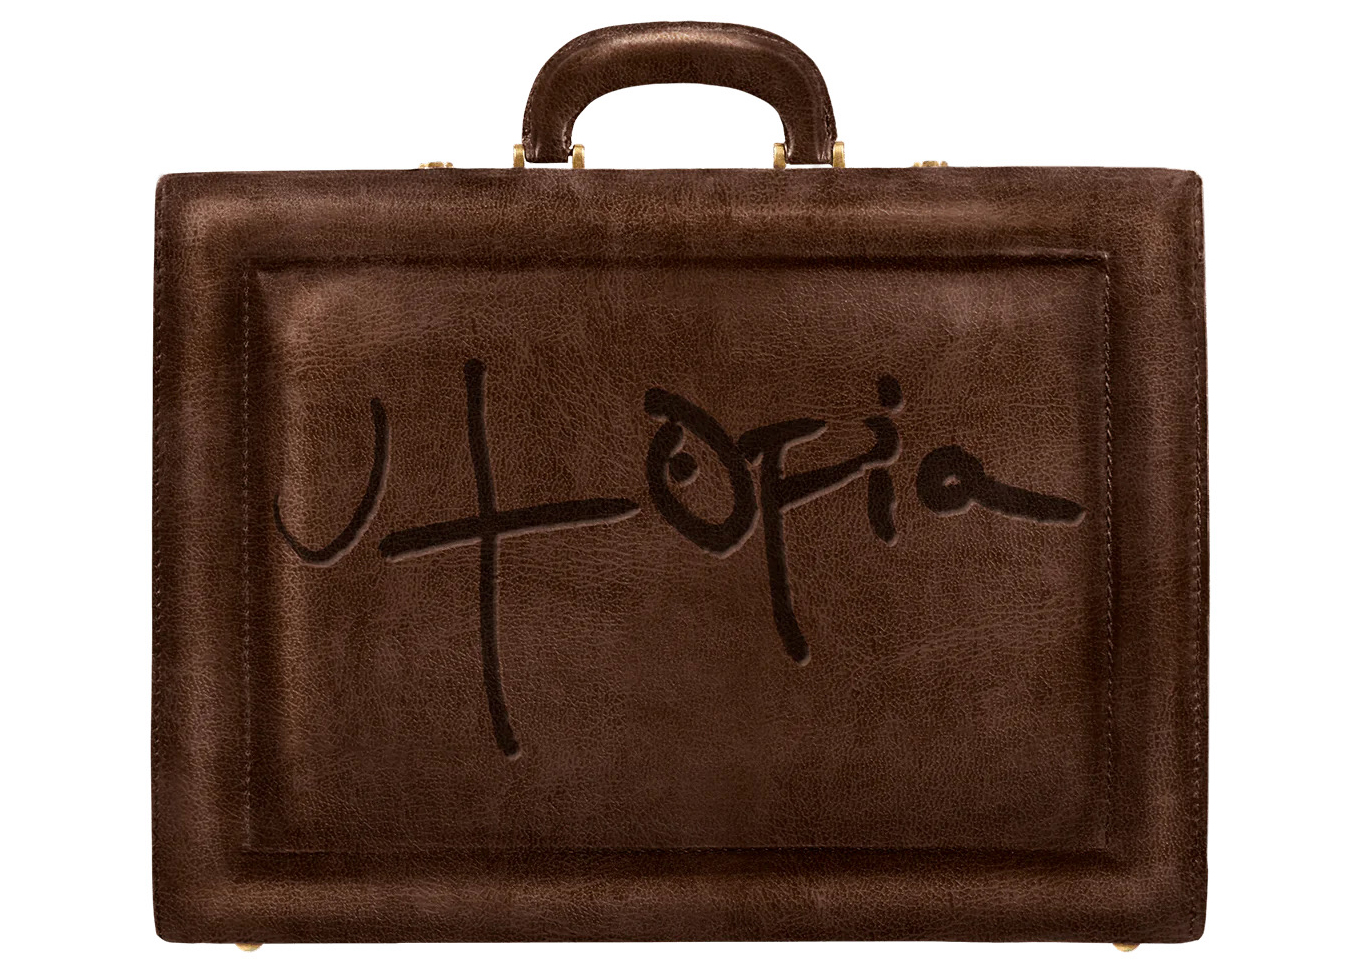 Travis Scott Utopia Briefcase